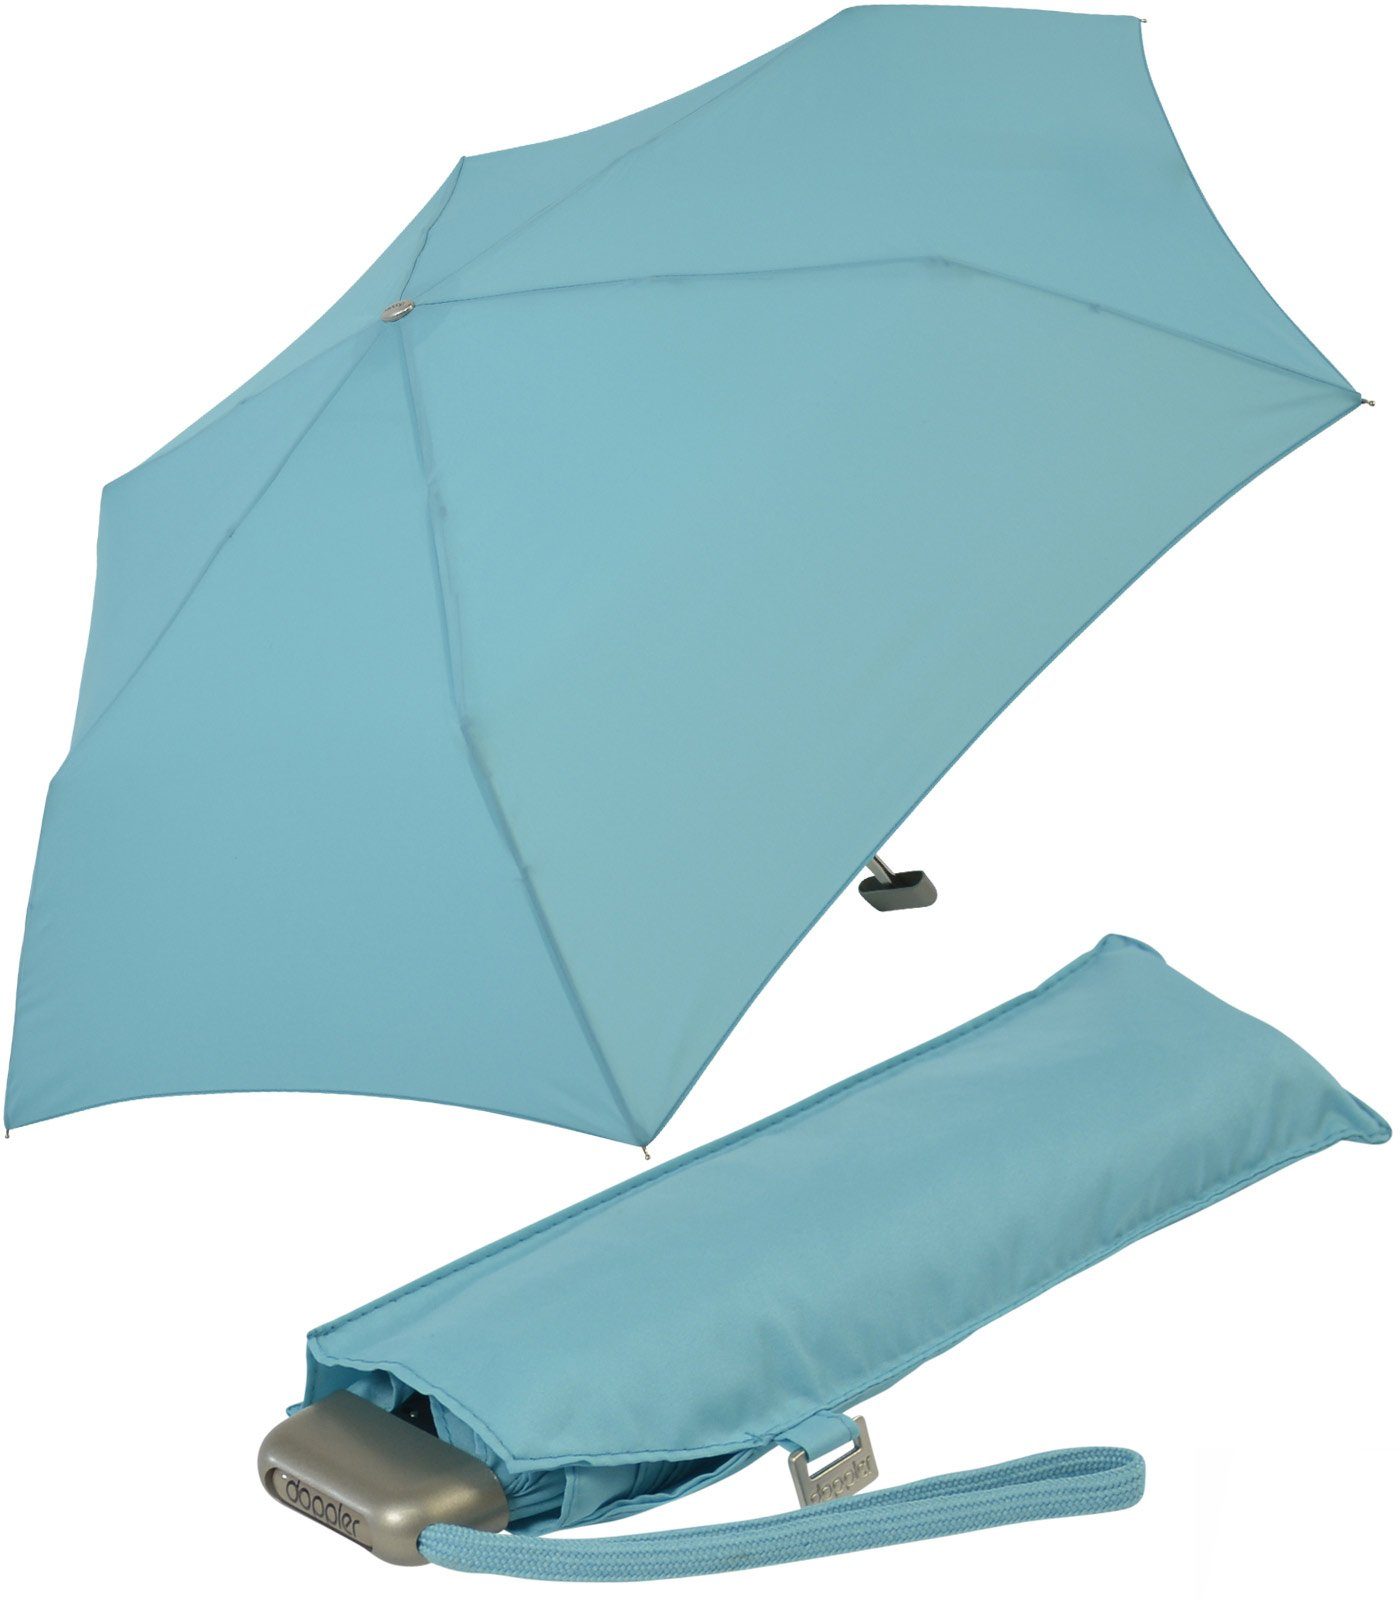 doppler® Langregenschirm ein leichter und flacher Schirm für jede Tasche, dieser treue Begleiter findet überall Platz hellblau